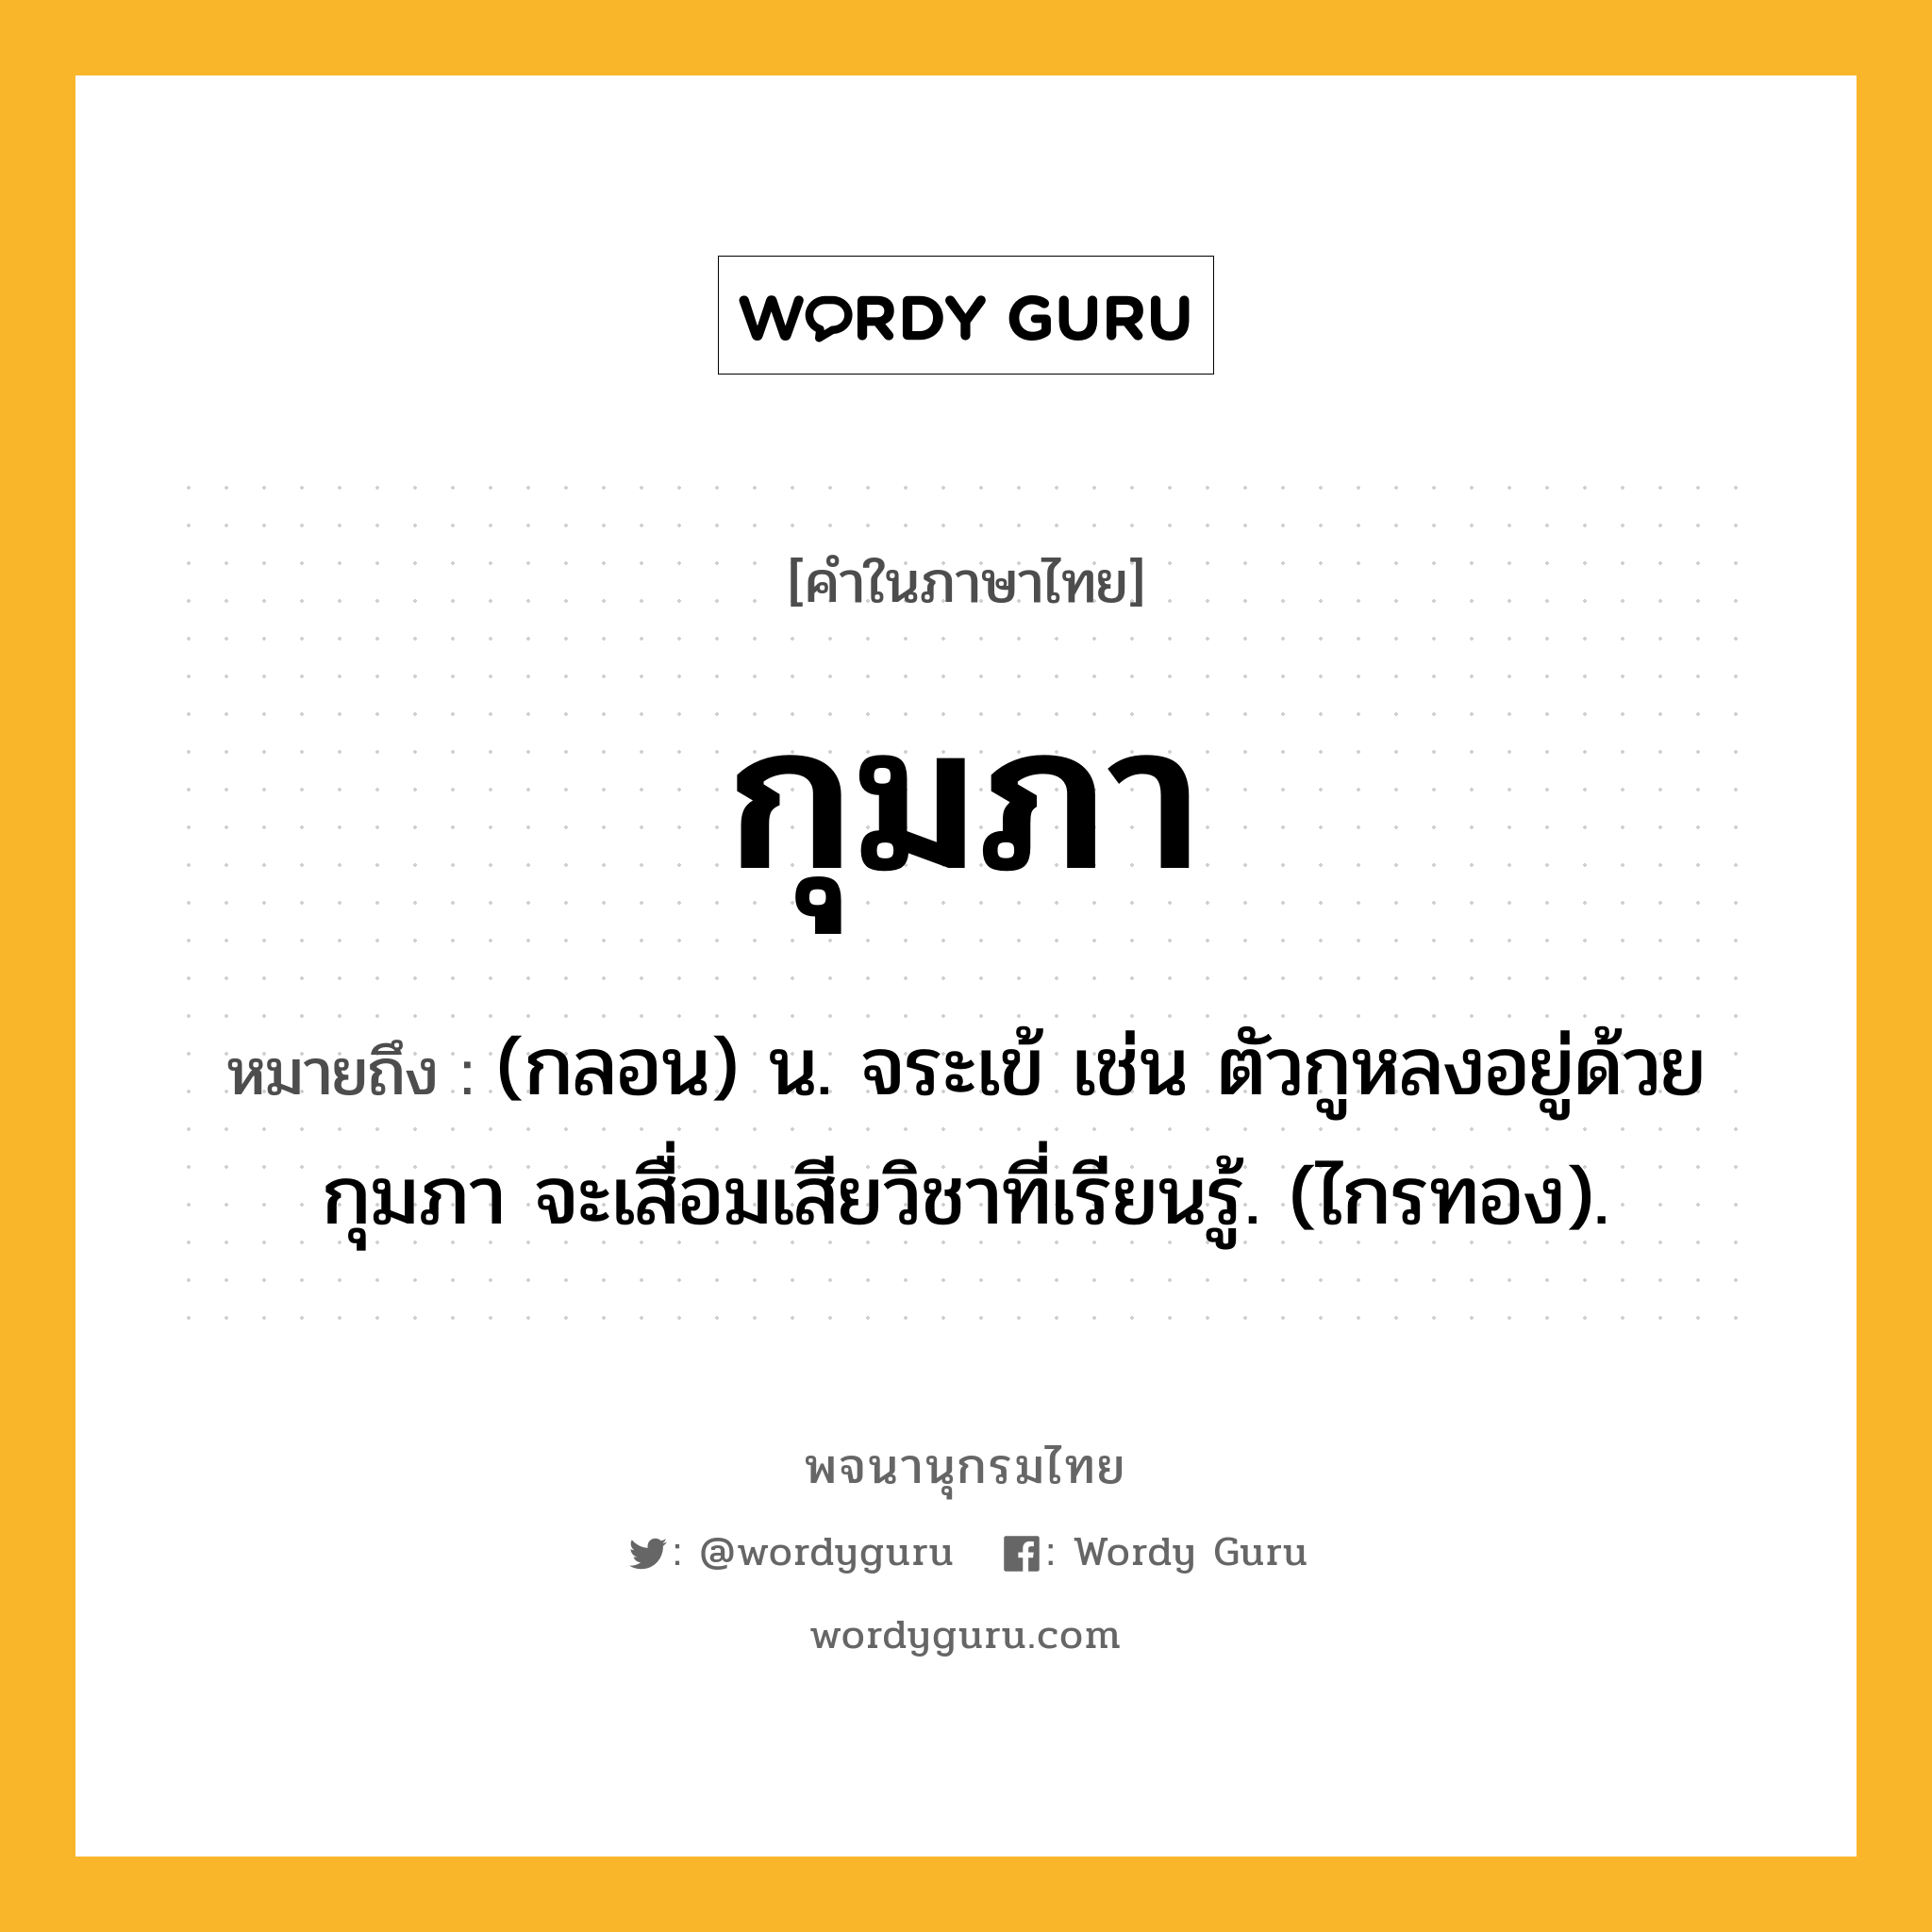 กุมภา หมายถึงอะไร?, คำในภาษาไทย กุมภา หมายถึง (กลอน) น. จระเข้ เช่น ตัวกูหลงอยู่ด้วยกุมภา จะเสื่อมเสียวิชาที่เรียนรู้. (ไกรทอง).